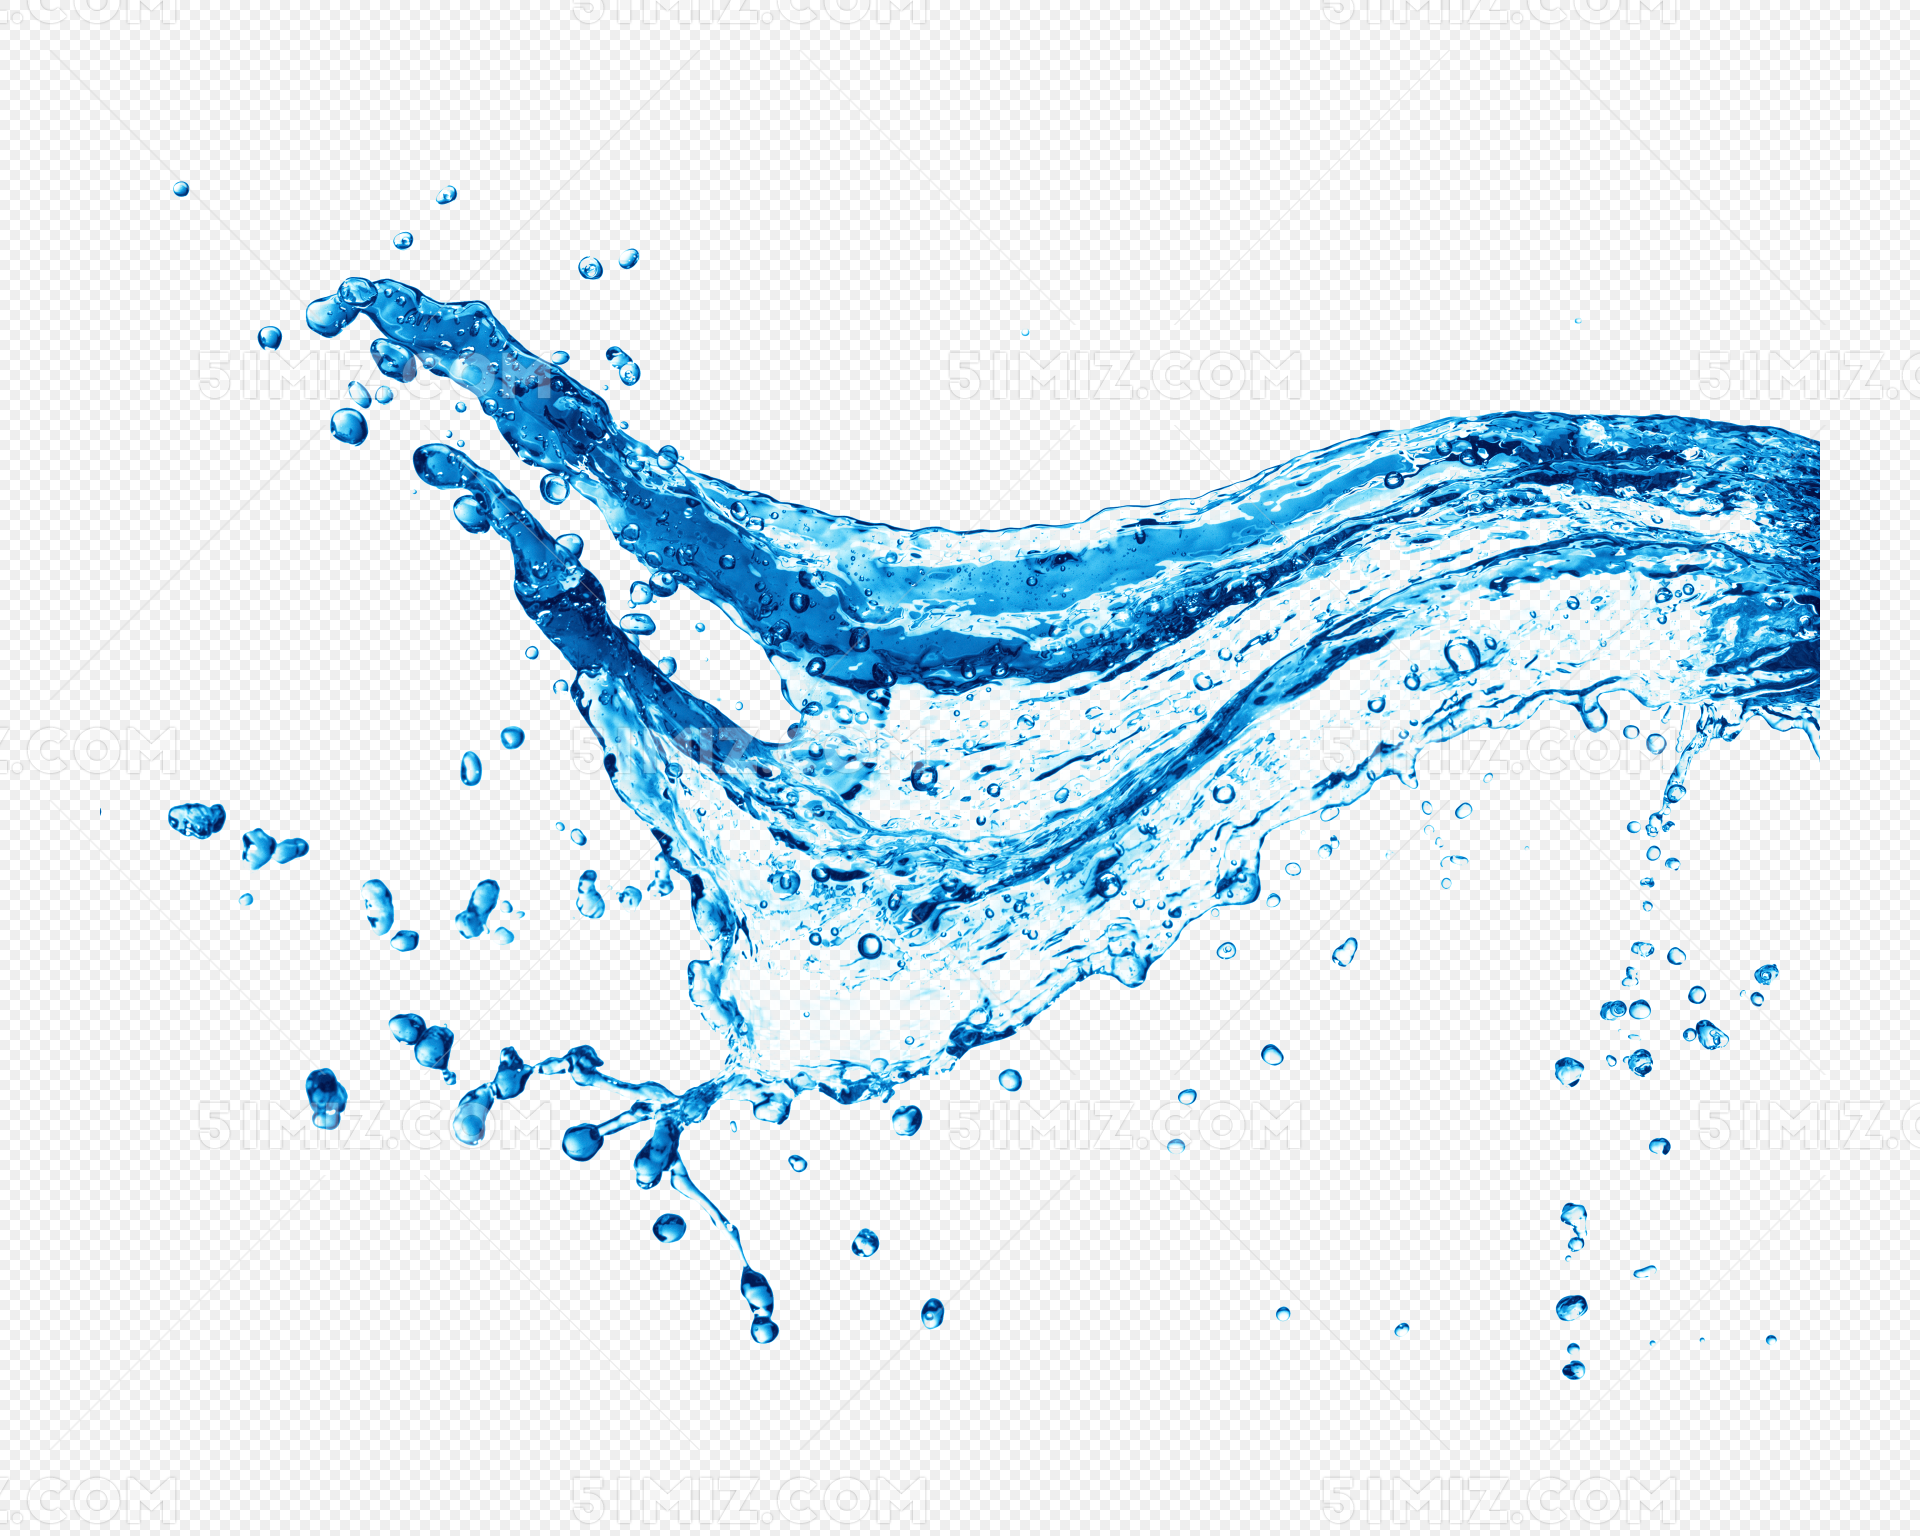 水的形状素材-水的形状图片-水的形状素材图片下载-觅知网